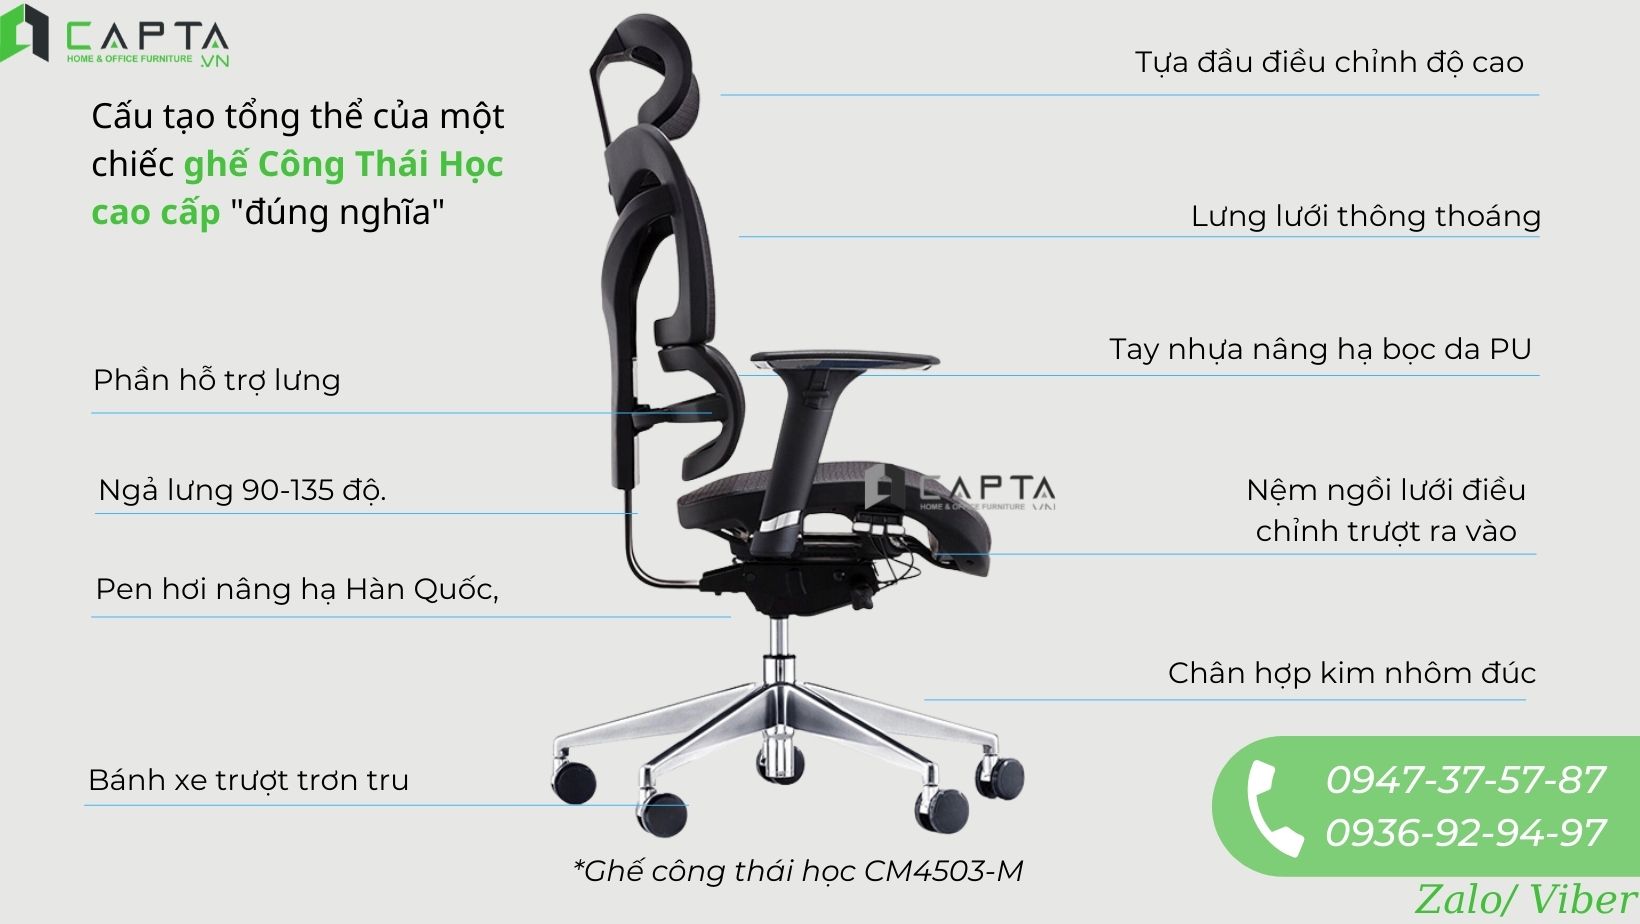 Cấu tạo tổng thể của ghế văn phòng ergonomic CM4503-M 